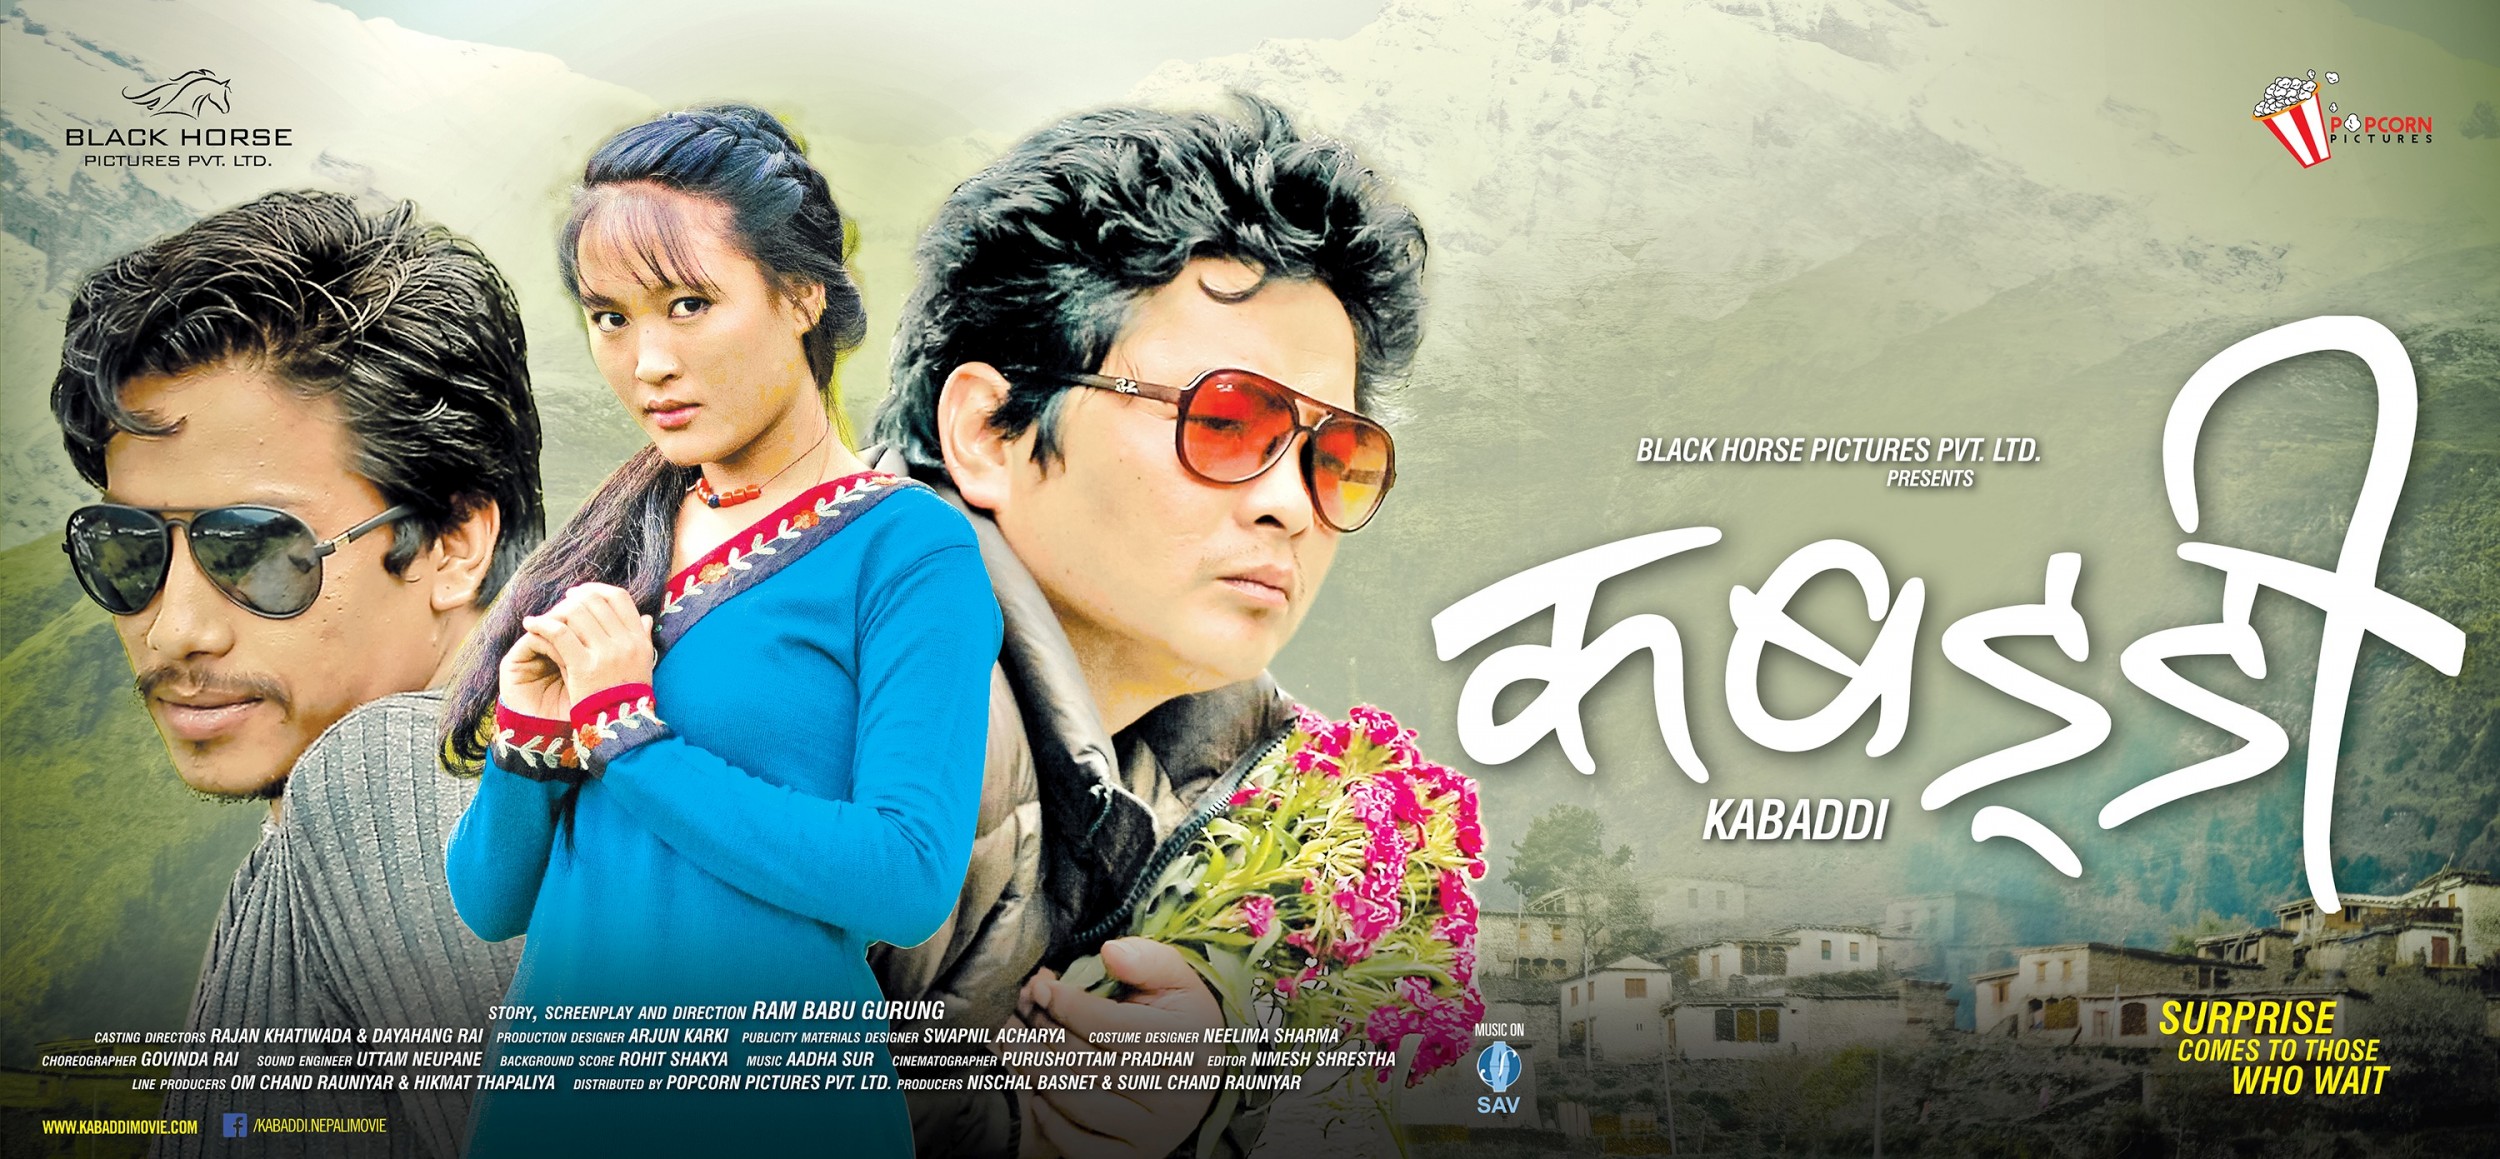 Mega Sized Movie Poster Image for Kabarddi (#5 of 6)